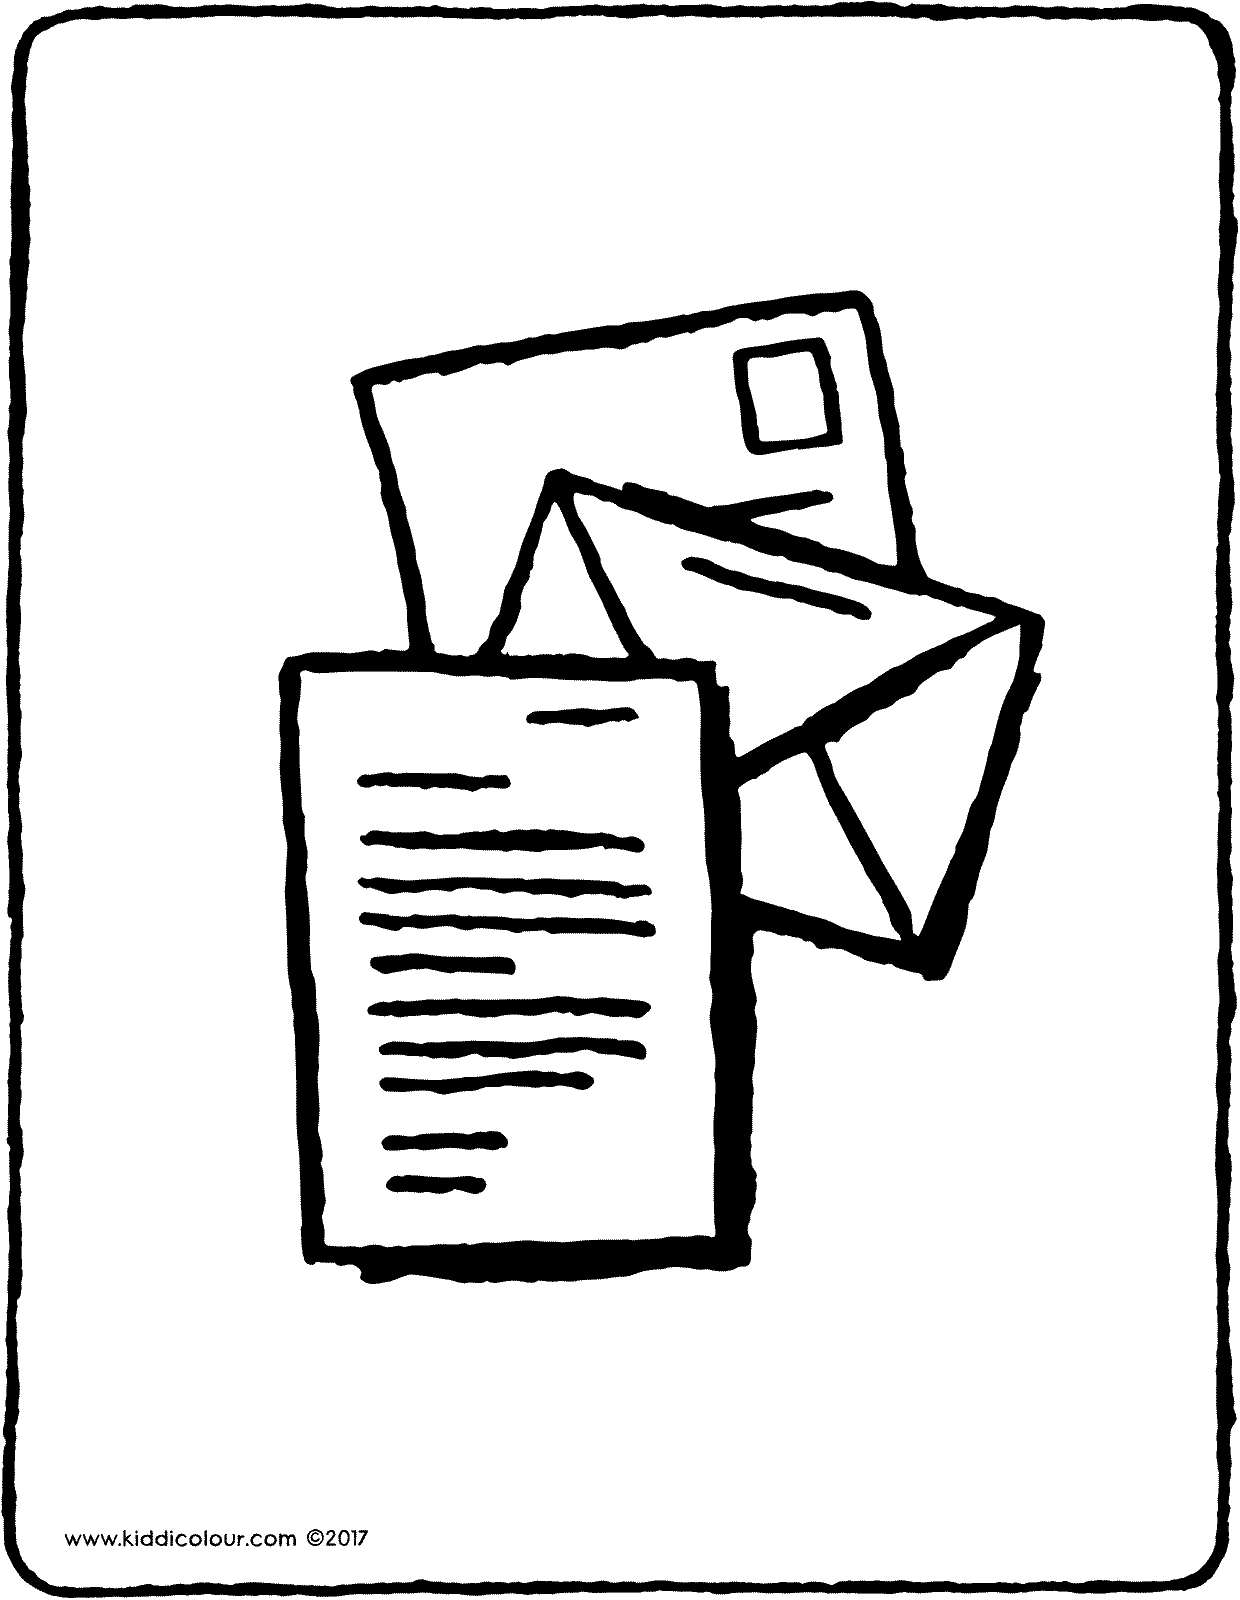 a letter in an envelope - kiddicolour